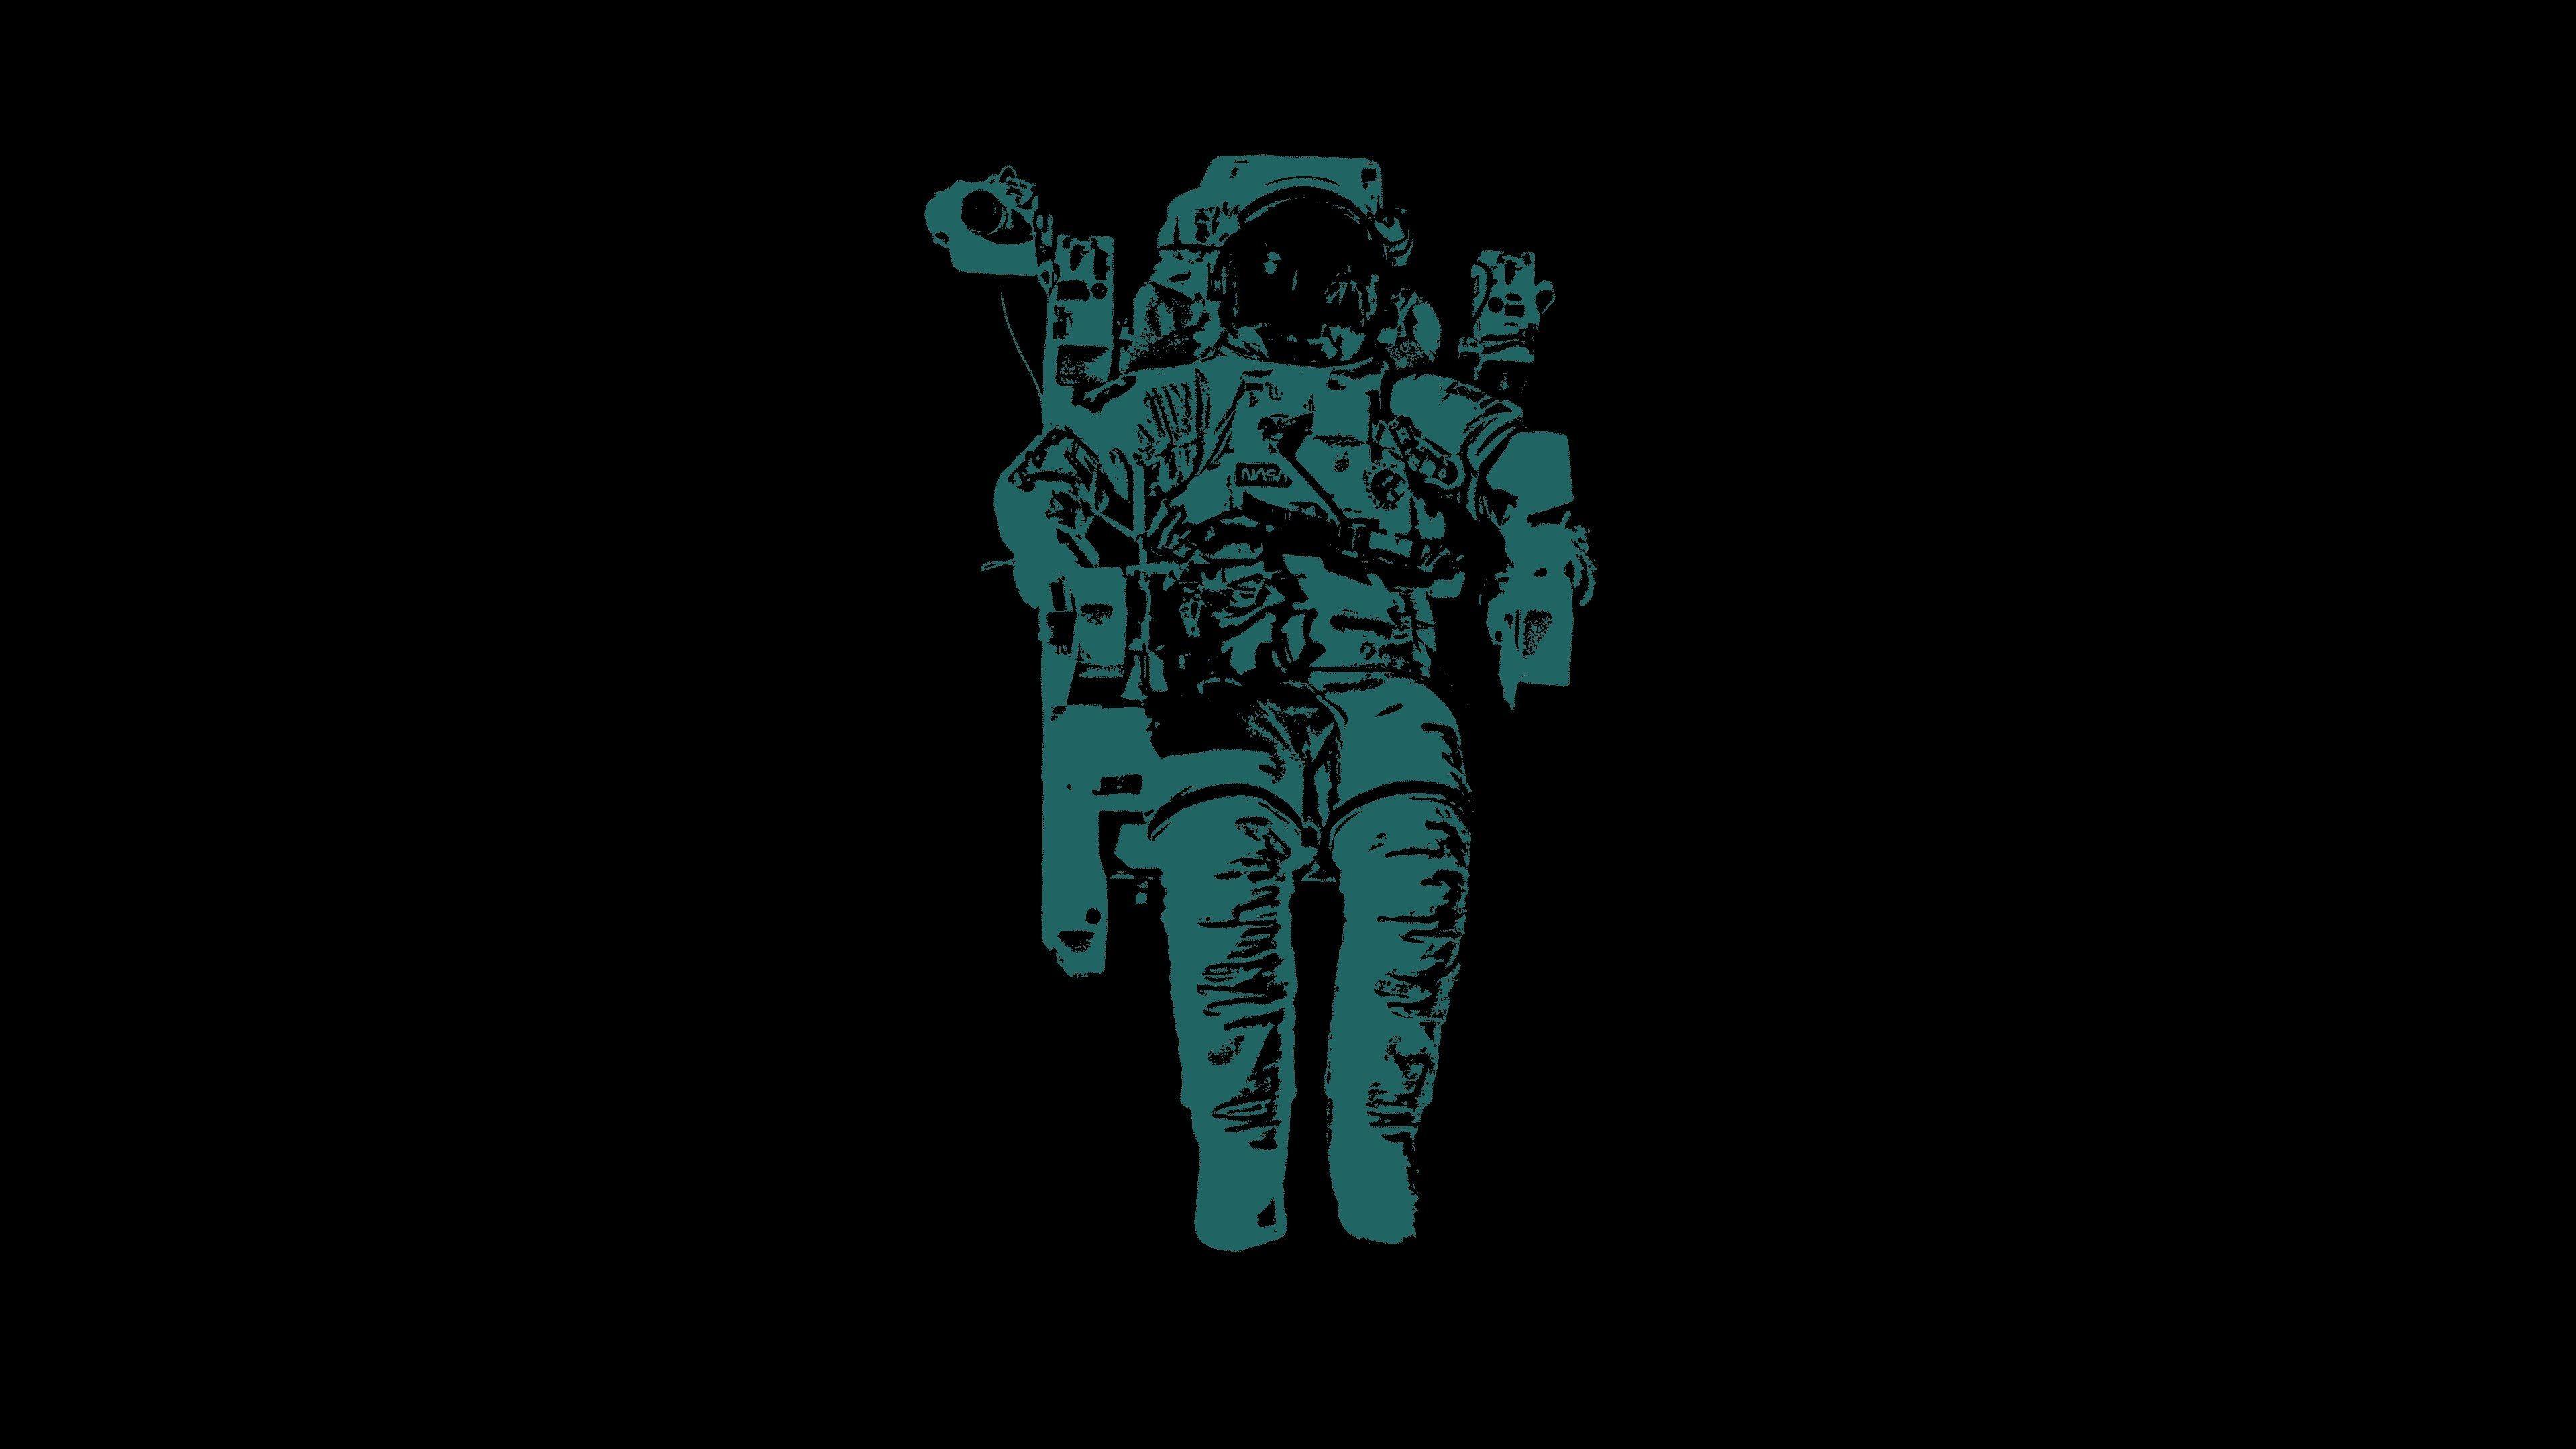 HD Astronaut Wallpaper